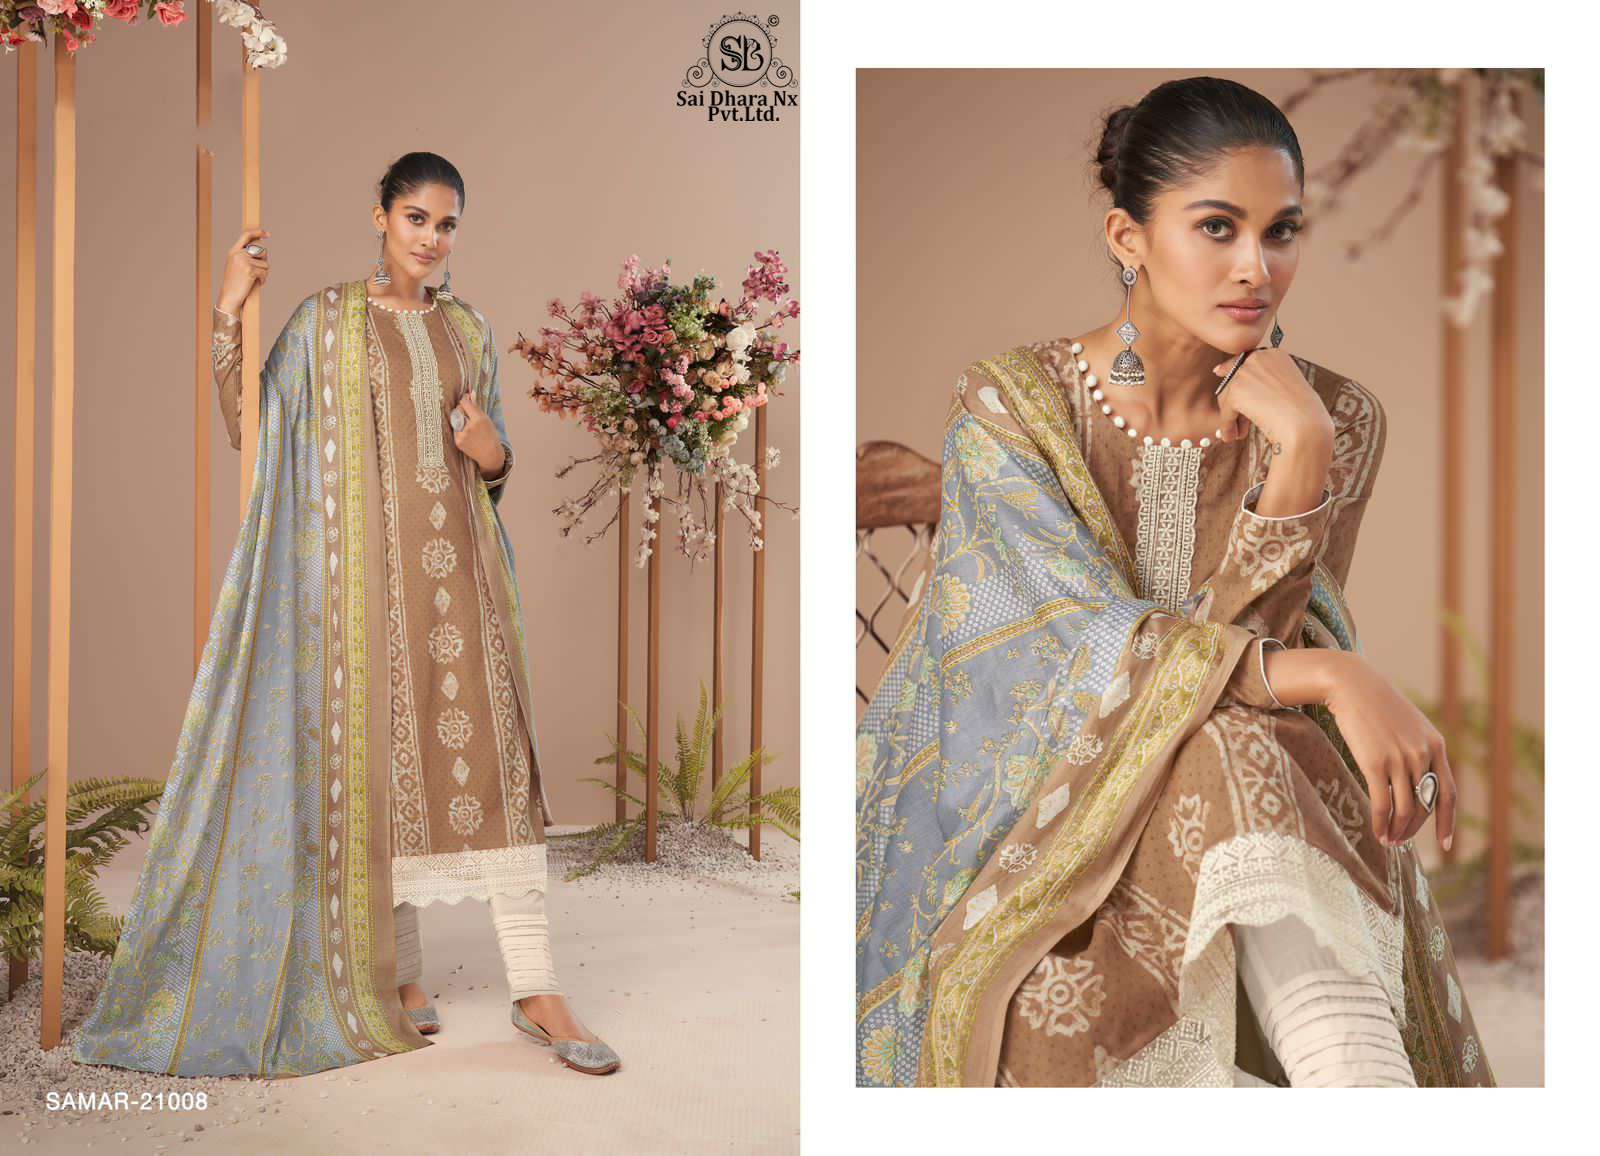 mumtaz arta presents pure lawn cambric cotton 3 piece pakistani suit wholesale shop in surat - SaiDharaNx 